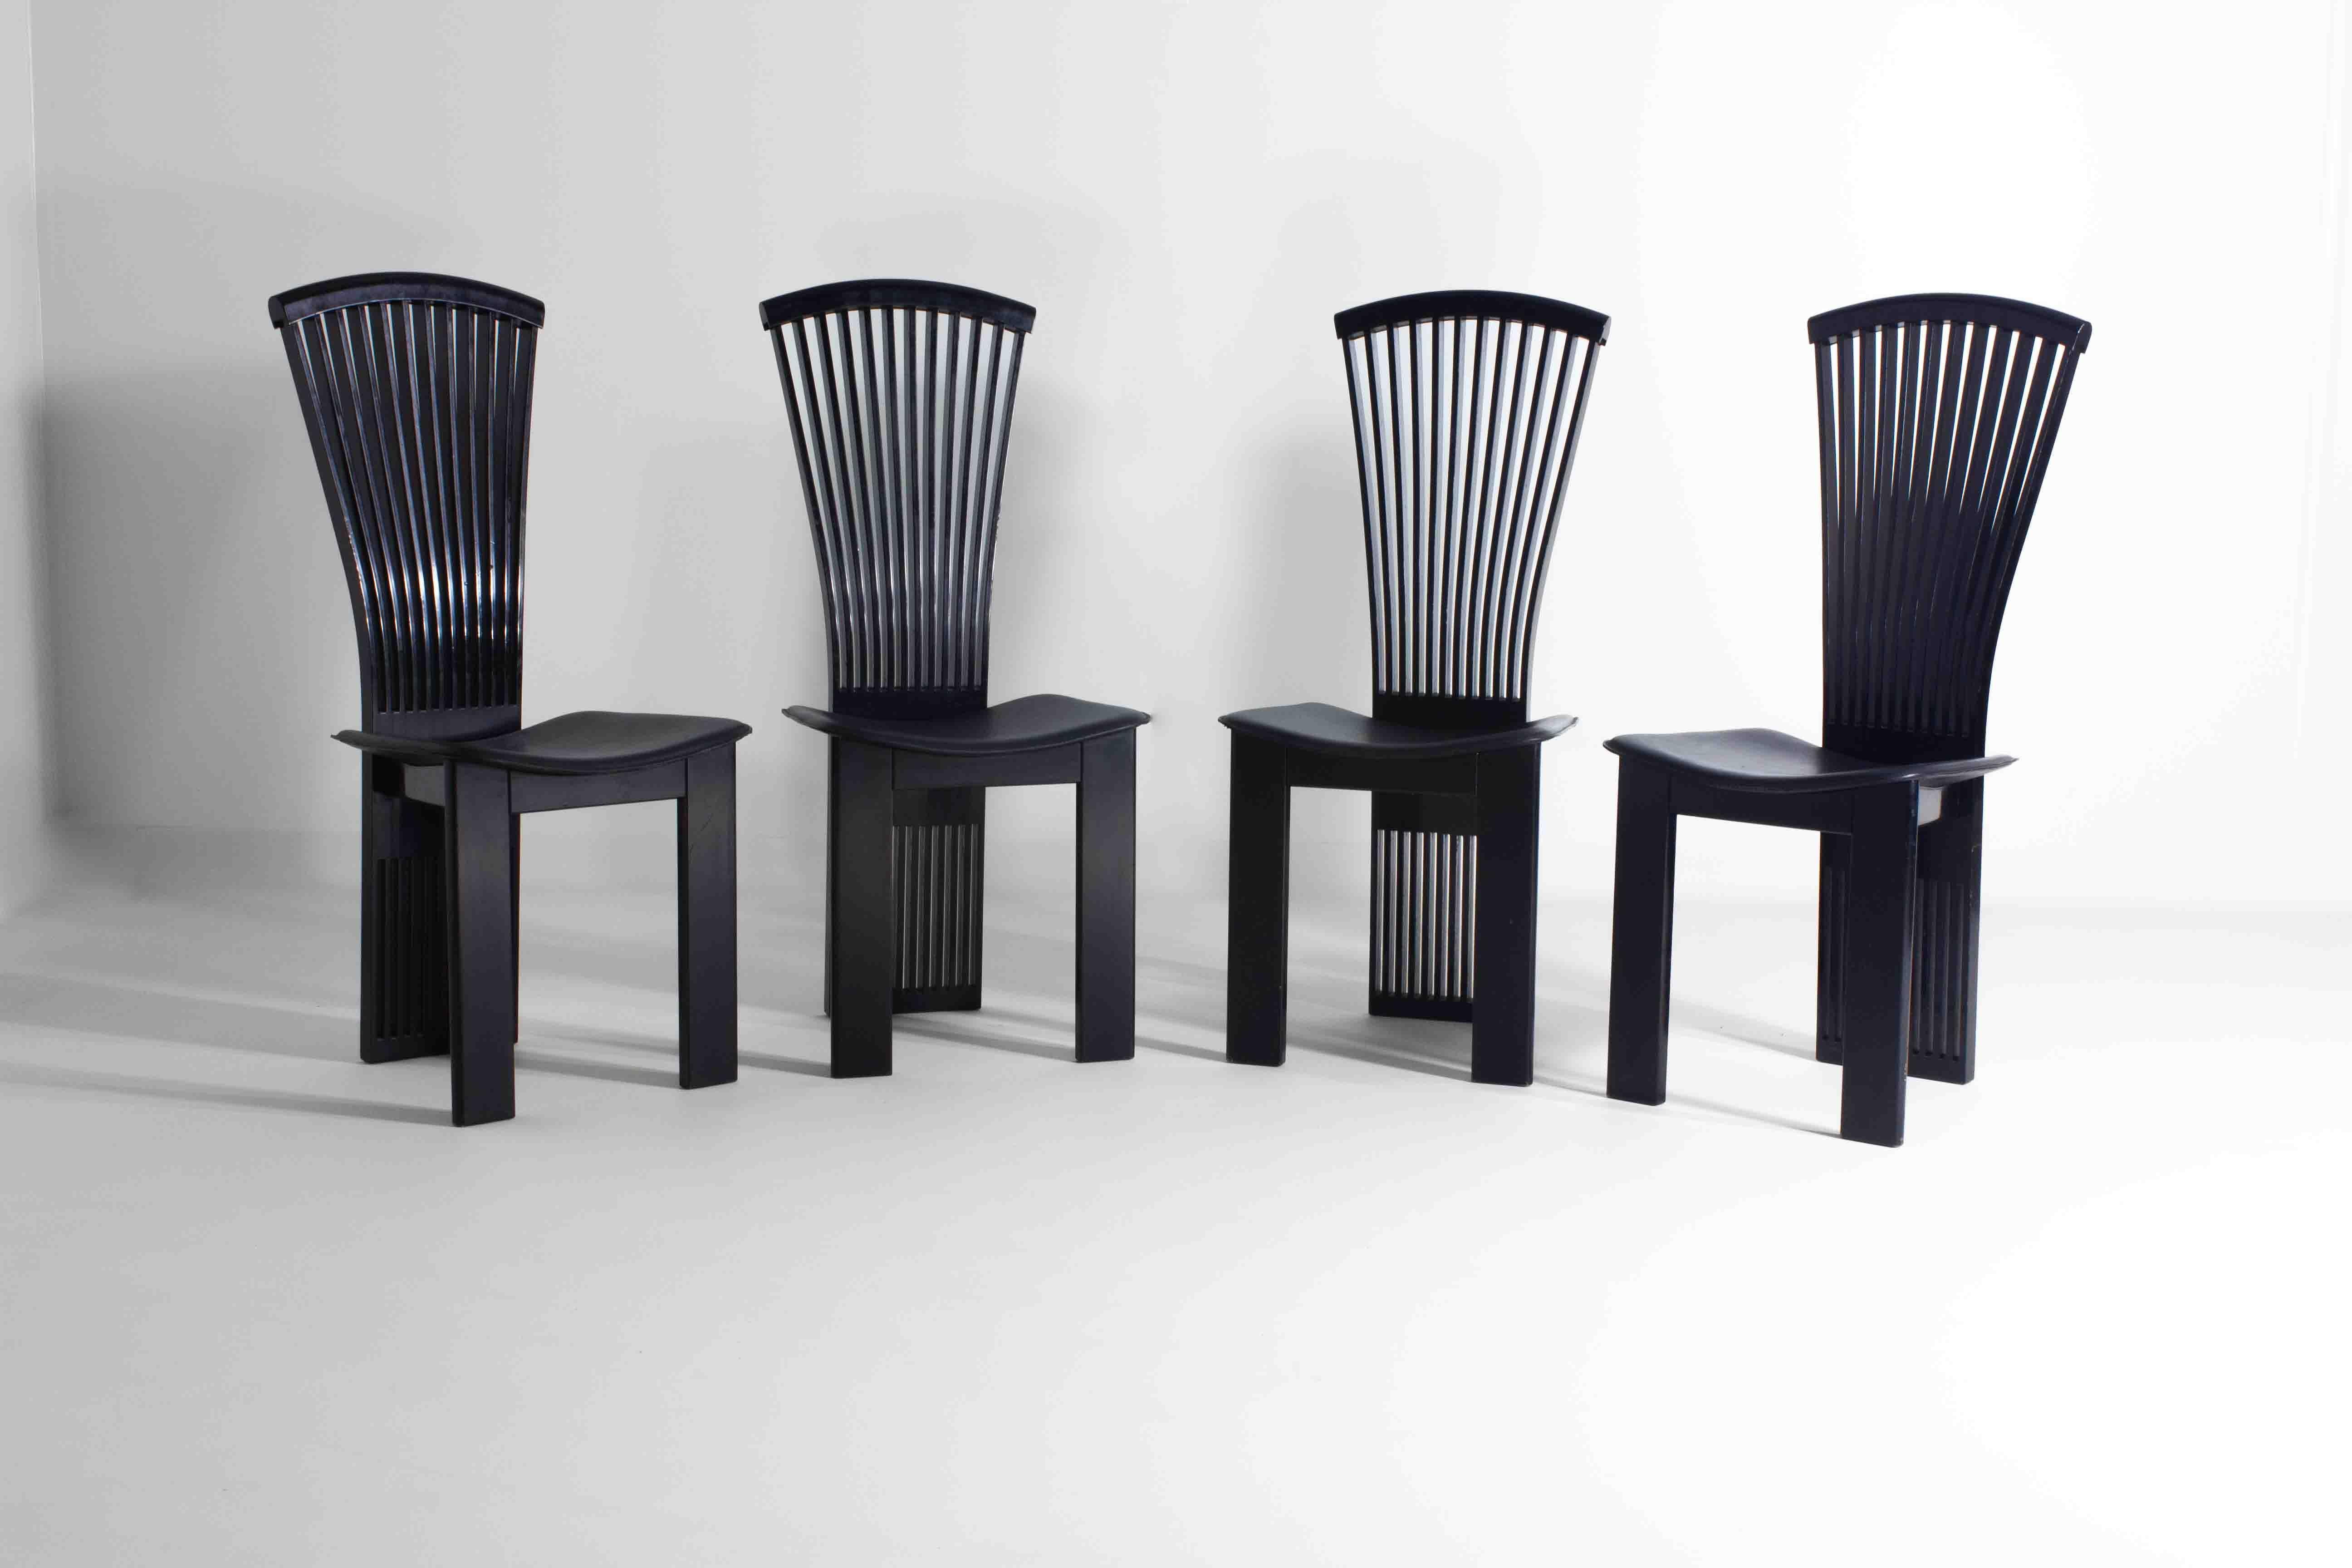 Ein elegantes Set aus 4 eleganten italienischen Esszimmerstühlen von Pietro Costantini. Sie sind ein echtes Beispiel für die kühne Kreativität des postmodernen Designs der 1980er Jahre. Die Stühle zeichnen sich durch eine markante Silhouette mit